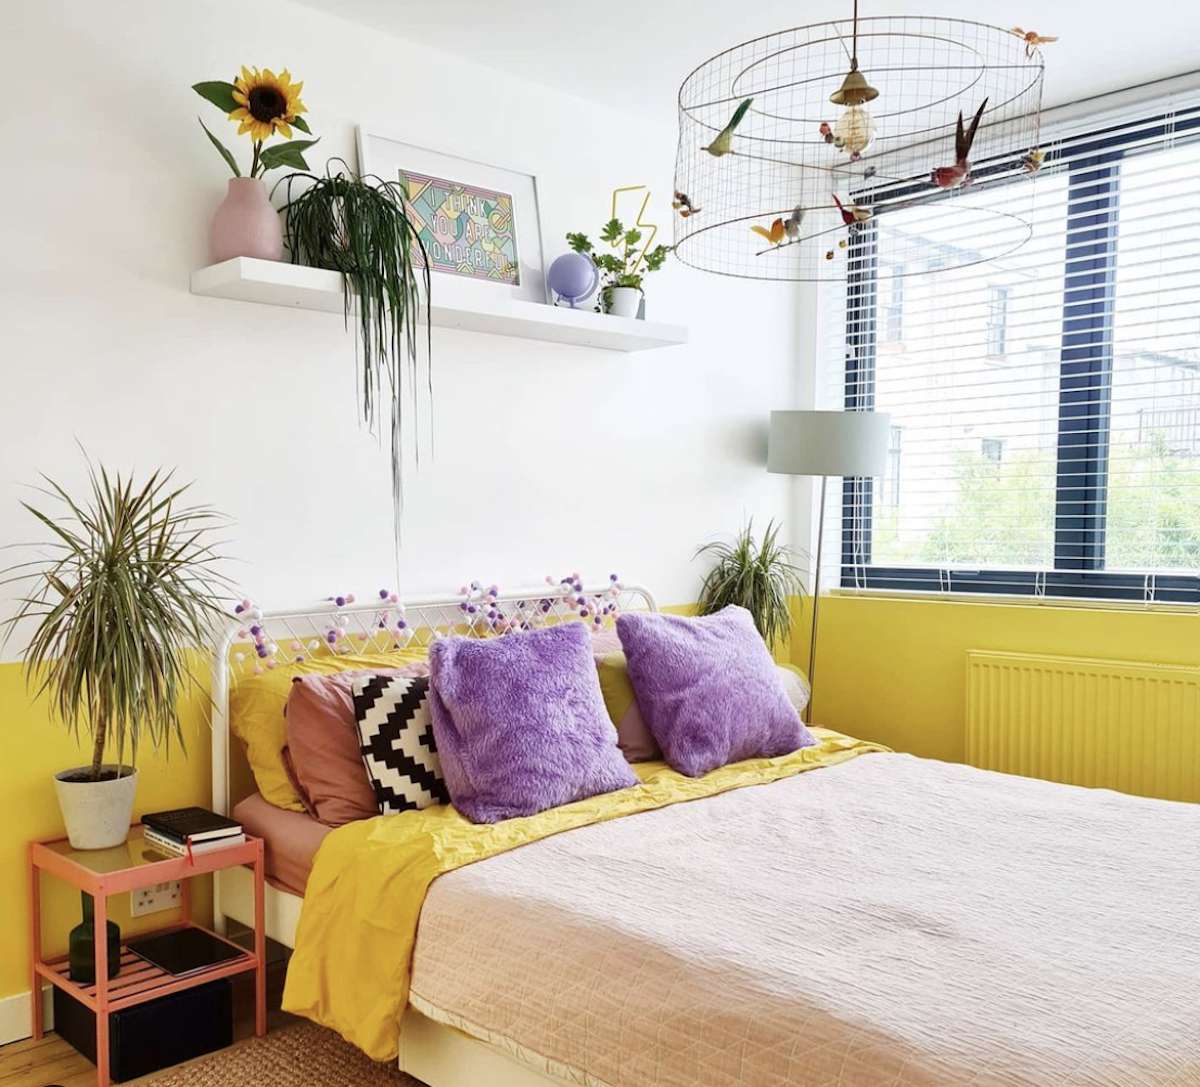 Lila und gelbes Schlafzimmer mit weißen Wänden, schwebendes Regal mit Pflanzen und Kunstwerken, Kronleuchter, der wie ein Vogelkäfig aussieht